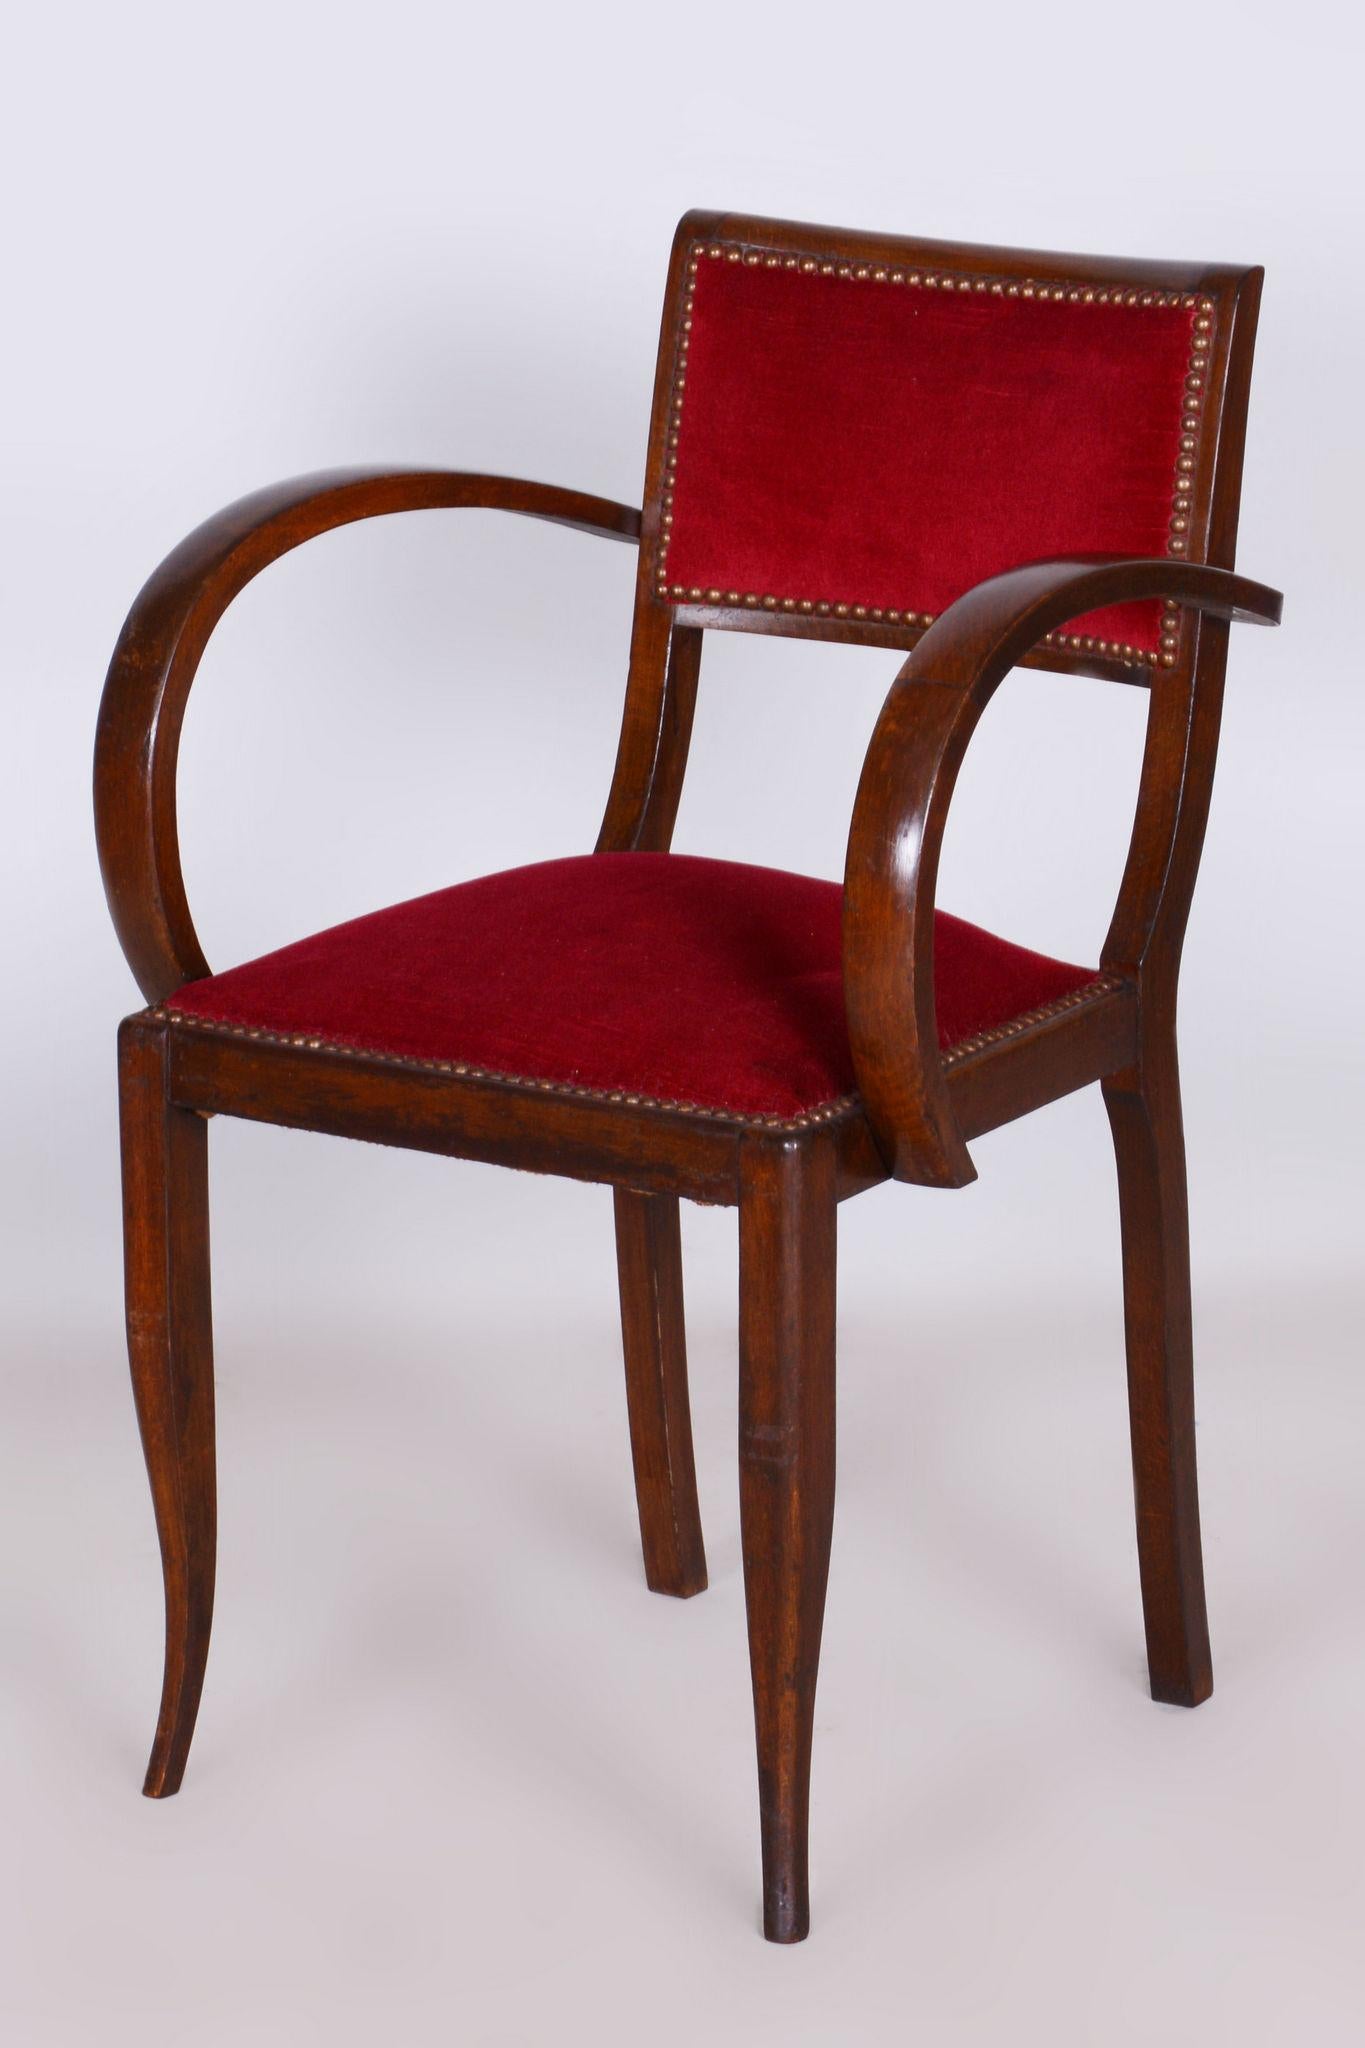 Restaurierter Art-Déco-Sessel aus Buche von Jules Leleu.

Zeitraum: 1920 - 1929
Quelle: Frankreich

Entworfen von Jules Leleu, einem französischen Designer an der Spitze der französischen Dekoration des 20. Jahrhunderts, der sich während der